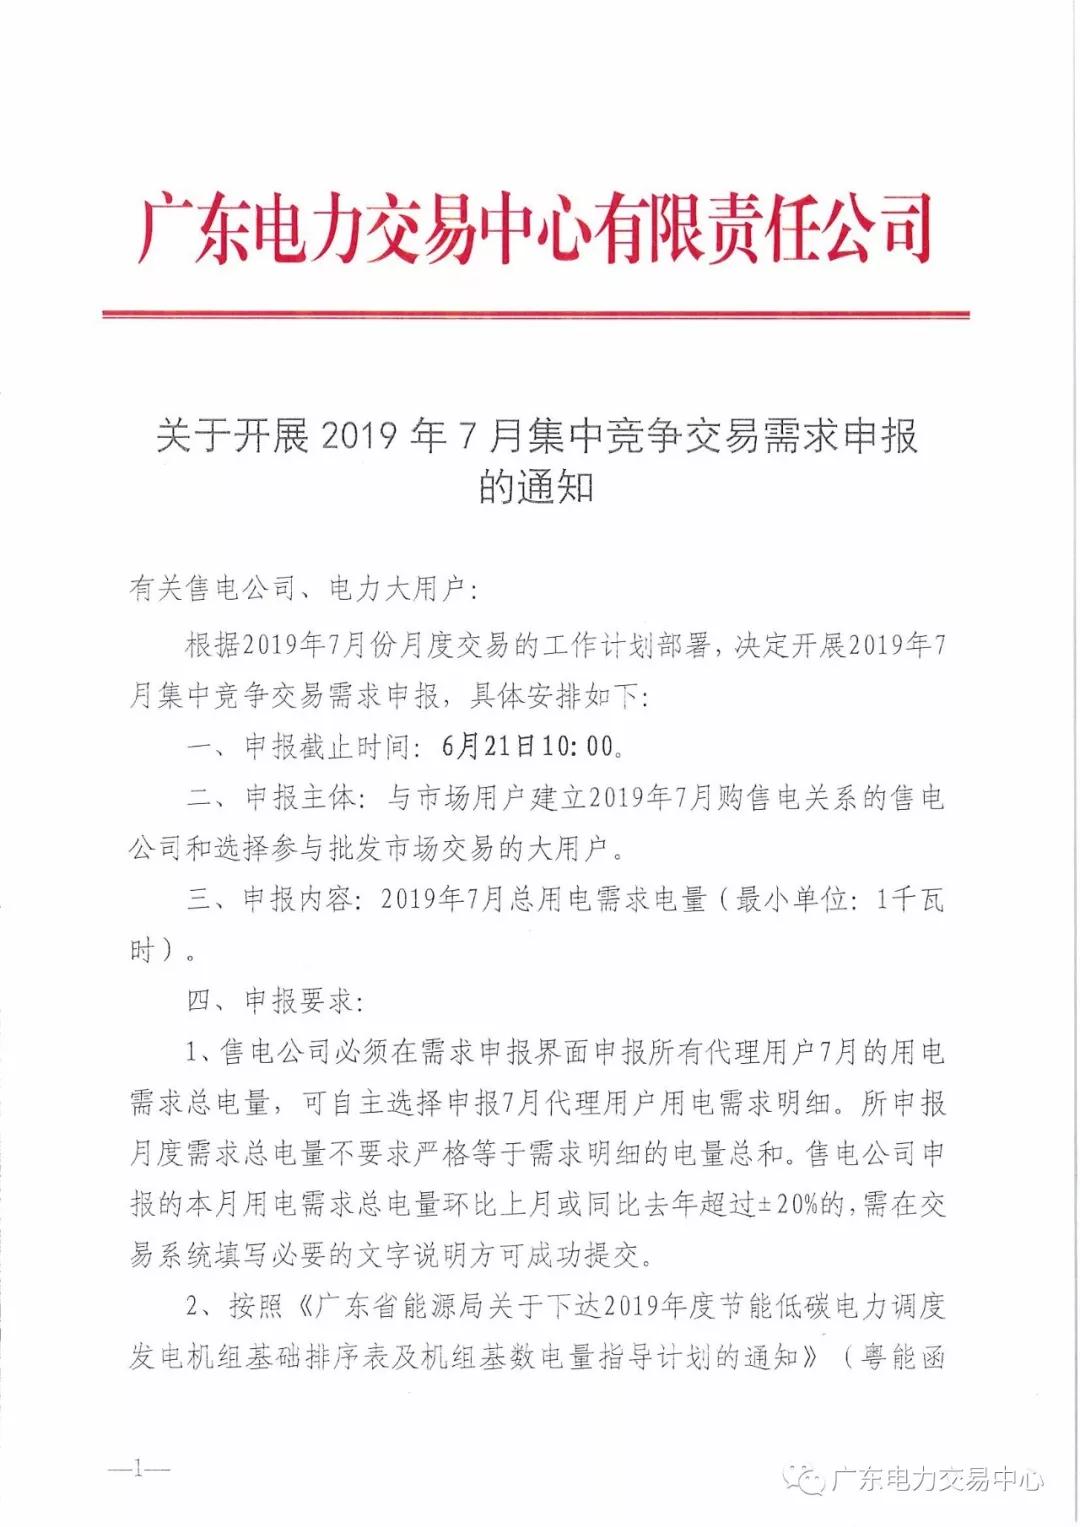 广东2019年7月集中竞争交易需求申报 截止时间6月21日10:00